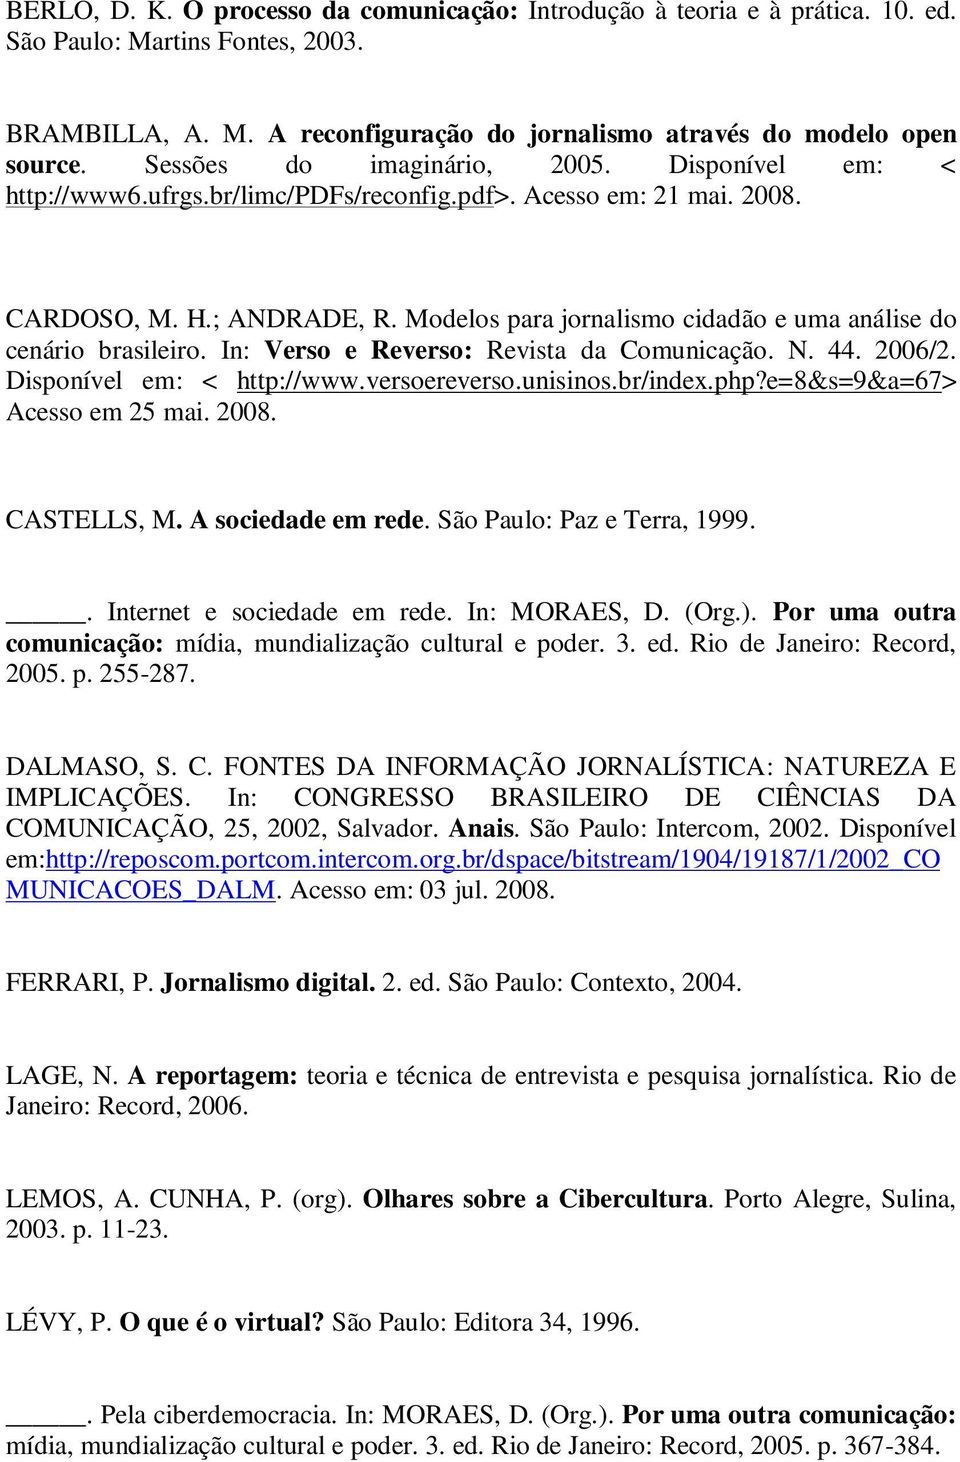 Modelos para jornalismo cidadão e uma análise do cenário brasileiro. In: Verso e Reverso: Revista da Comunicação. N. 44. 2006/2. Disponível em: < http://www.versoereverso.unisinos.br/index.php?